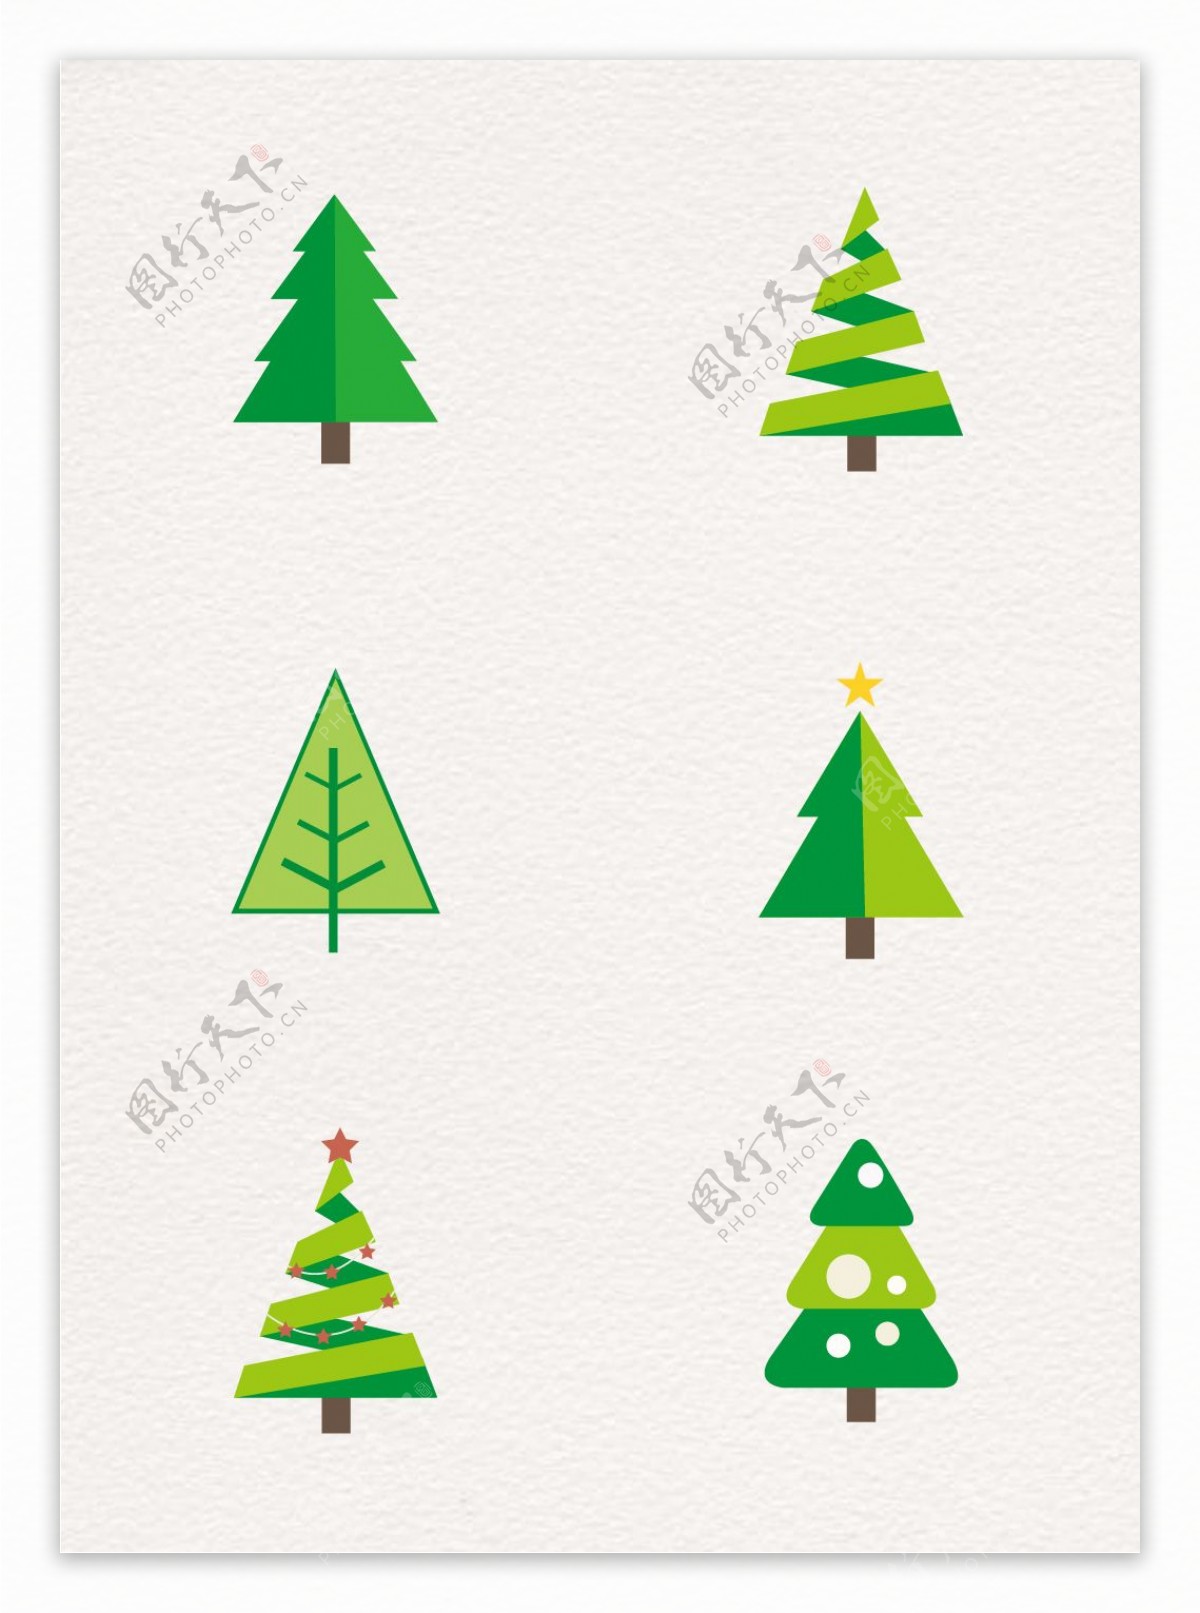 绿色植物圣诞树装饰元素设计